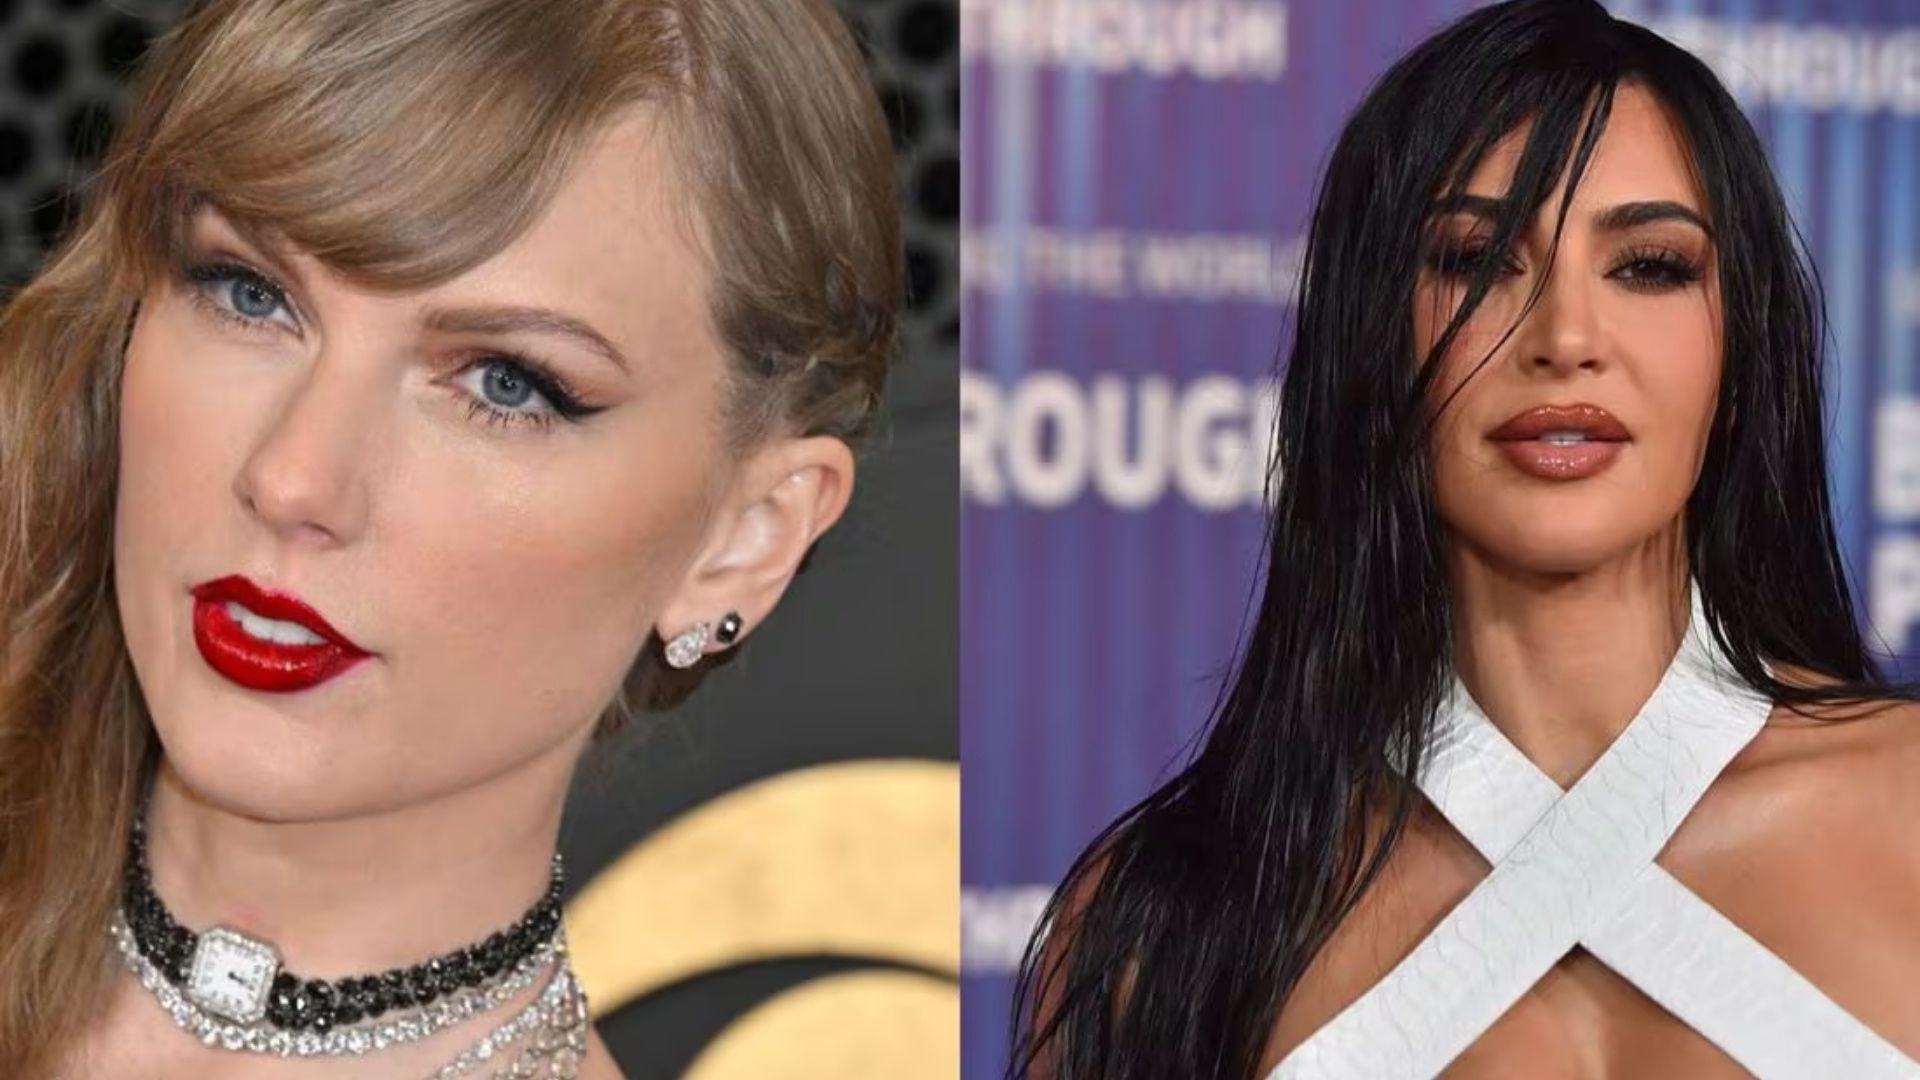 Beteja ende nuk ka mbaruar/Taylor Swift hakmerret ndaj Kim Kardashian duke i bërë ‘diss’!